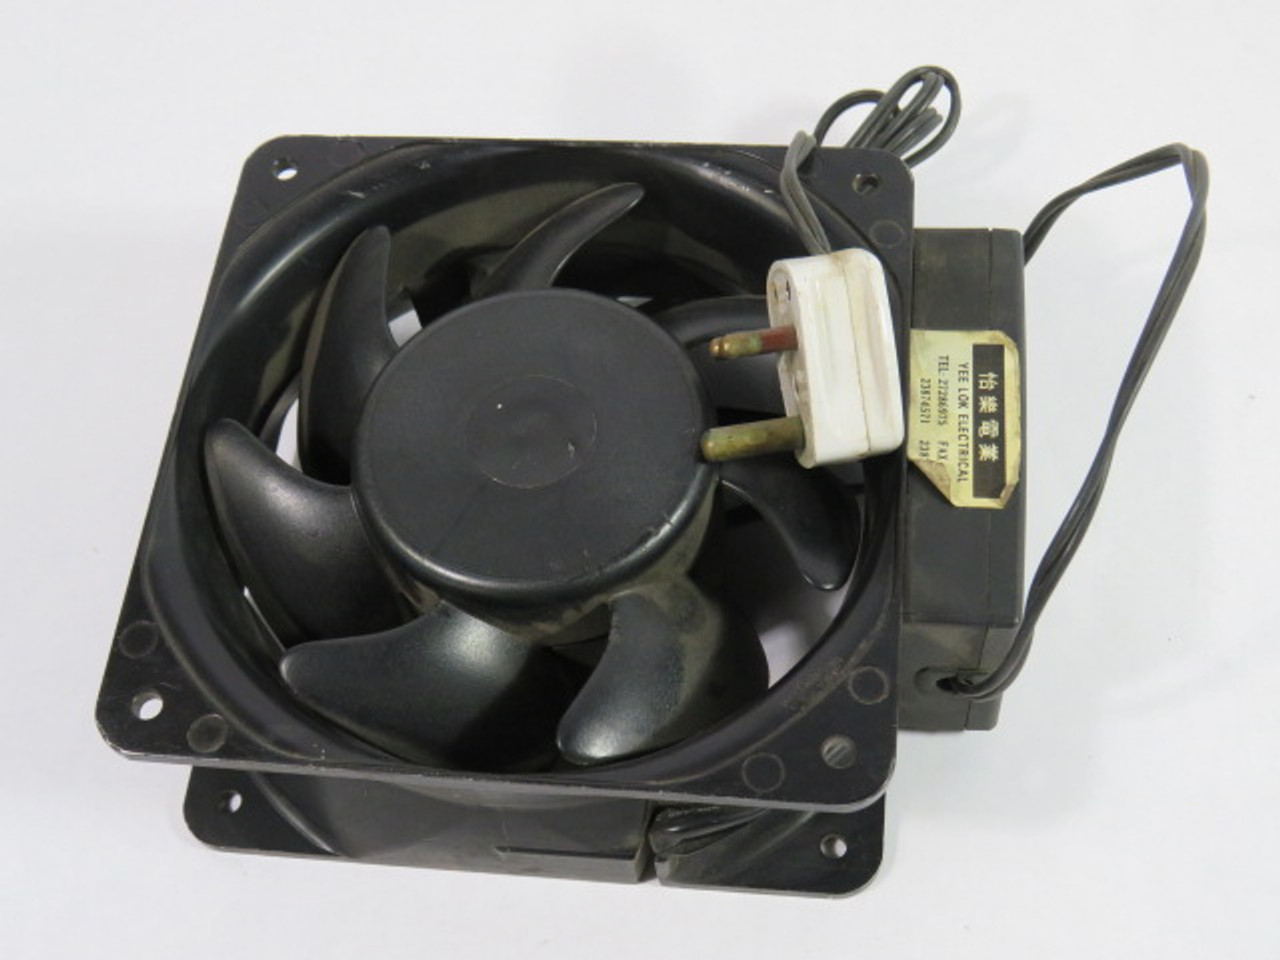 Oriental Motor D3297-742 Fan 200/230V 0.24/0.25A 0.75Uf 50/60Hz 2P USED